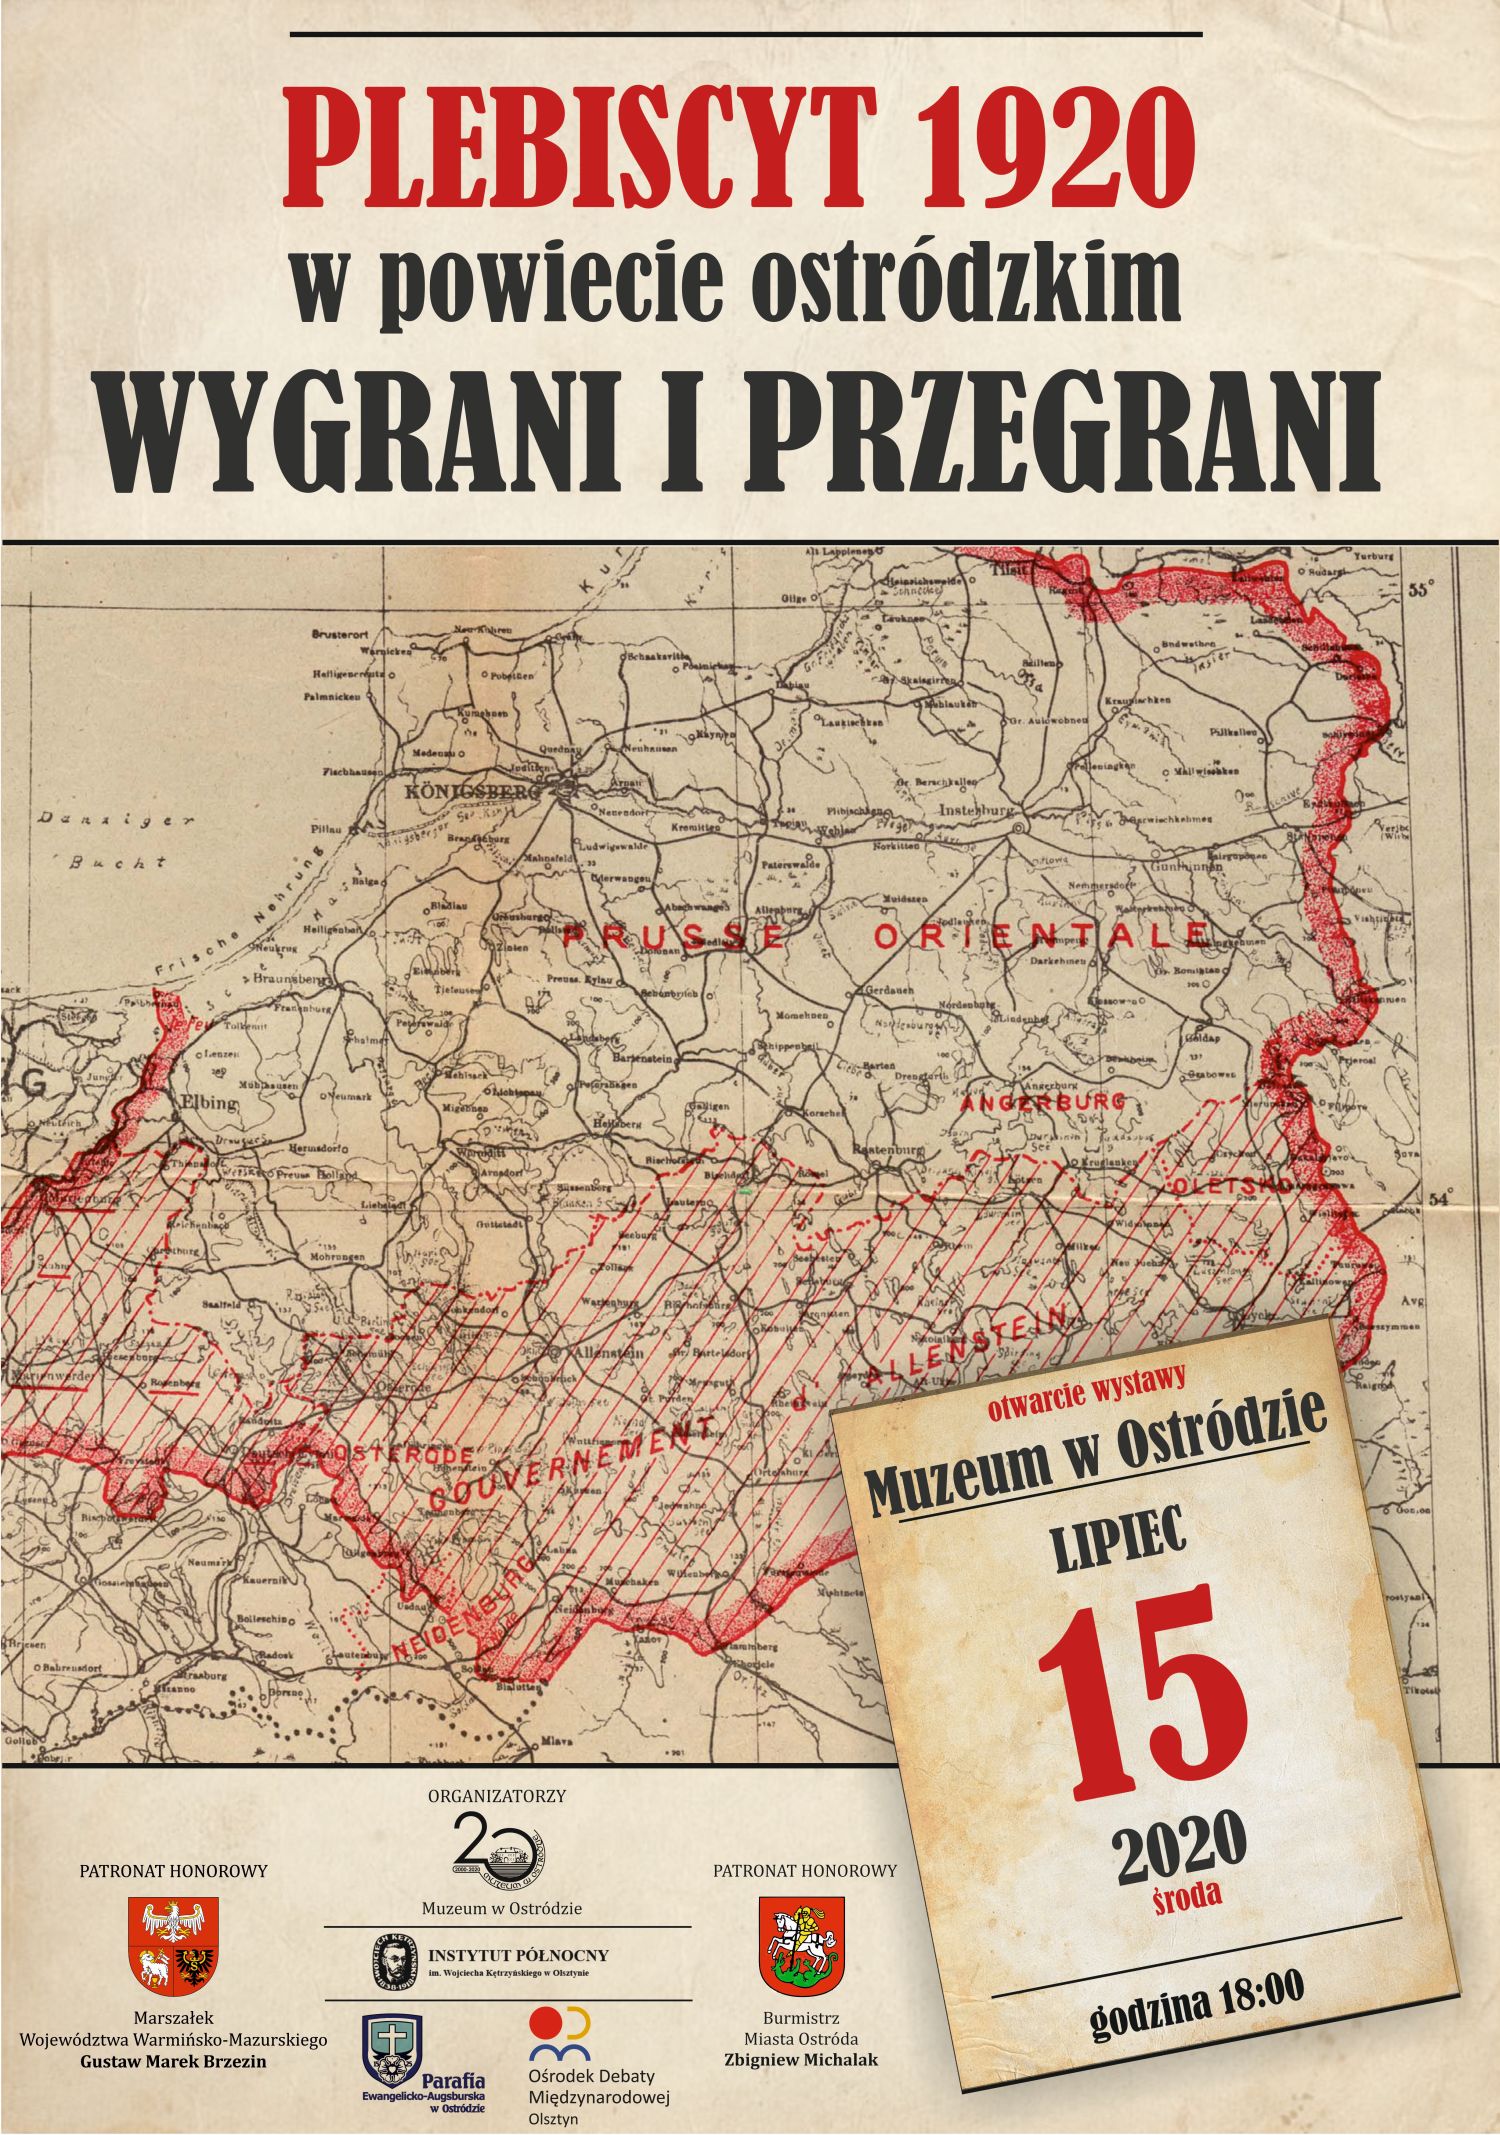 Plebiscyt 1920 w powiecie ostródzkim. Wygrani i Przegrani - plakat wydarzenia z informacjami i logami